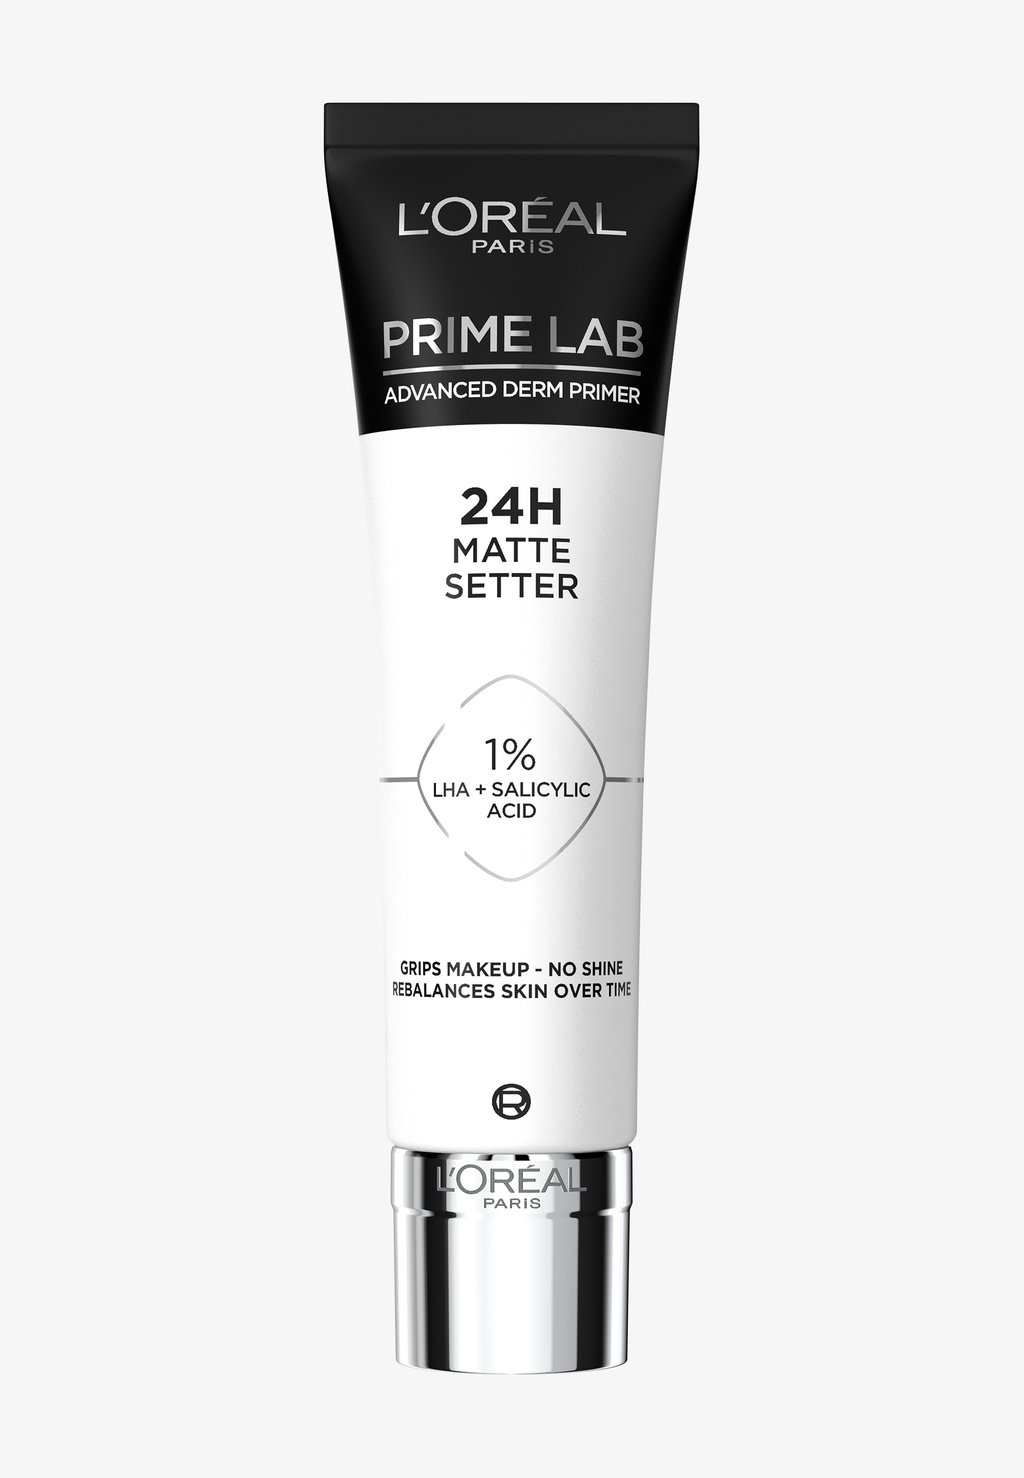 Праймер для глаз Prime Lab Matte Setter Primer L'Oréal Paris основа для макияжа l oréal paris матирующий праймер для лица prime lab matte setter